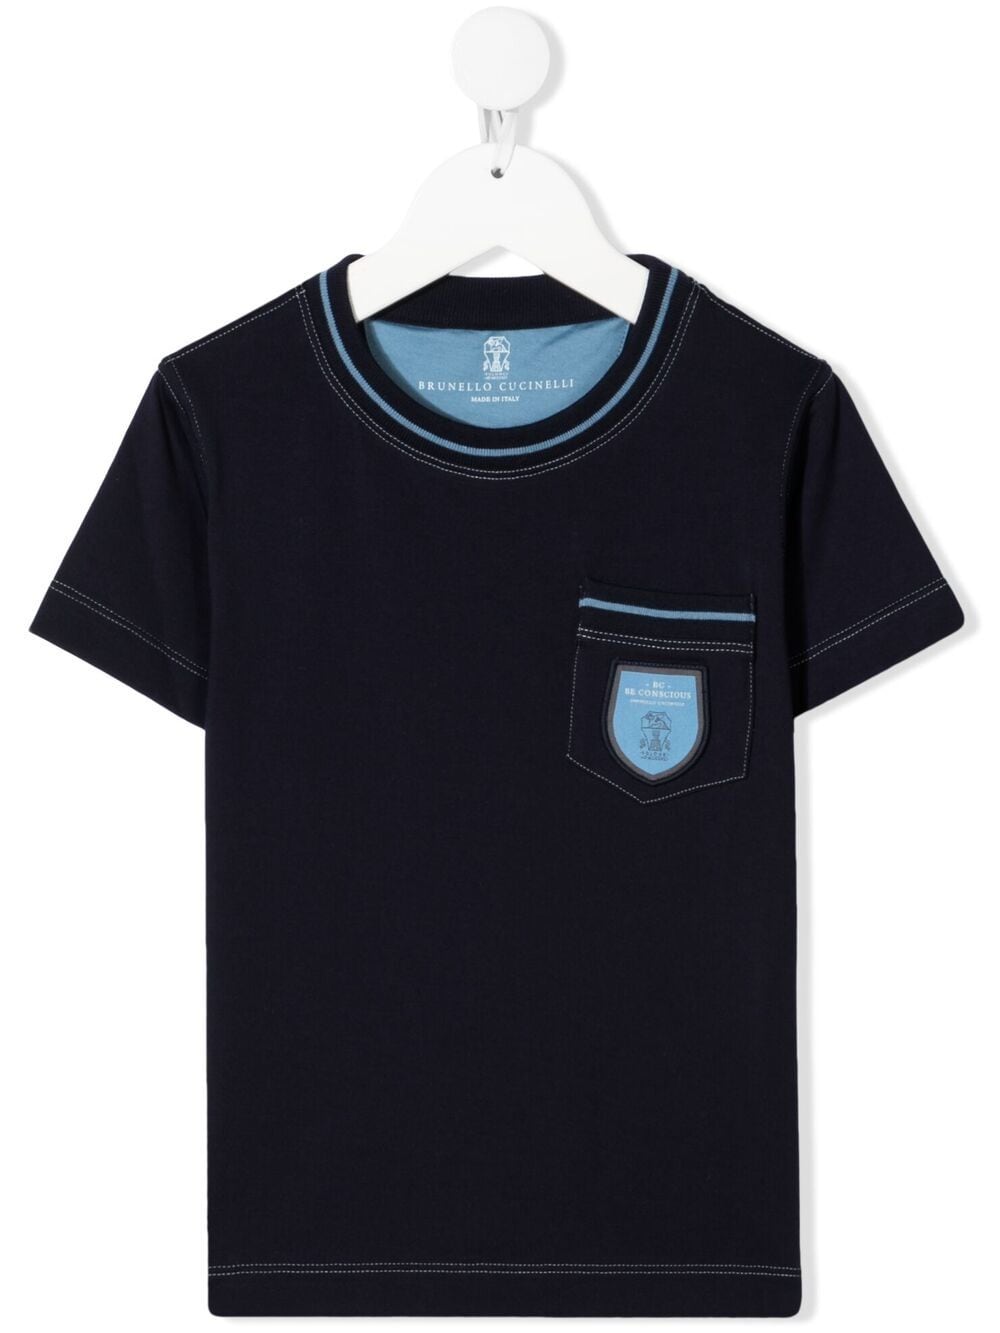 фото Brunello cucinelli kids футболка с накладным карманом и логотипом